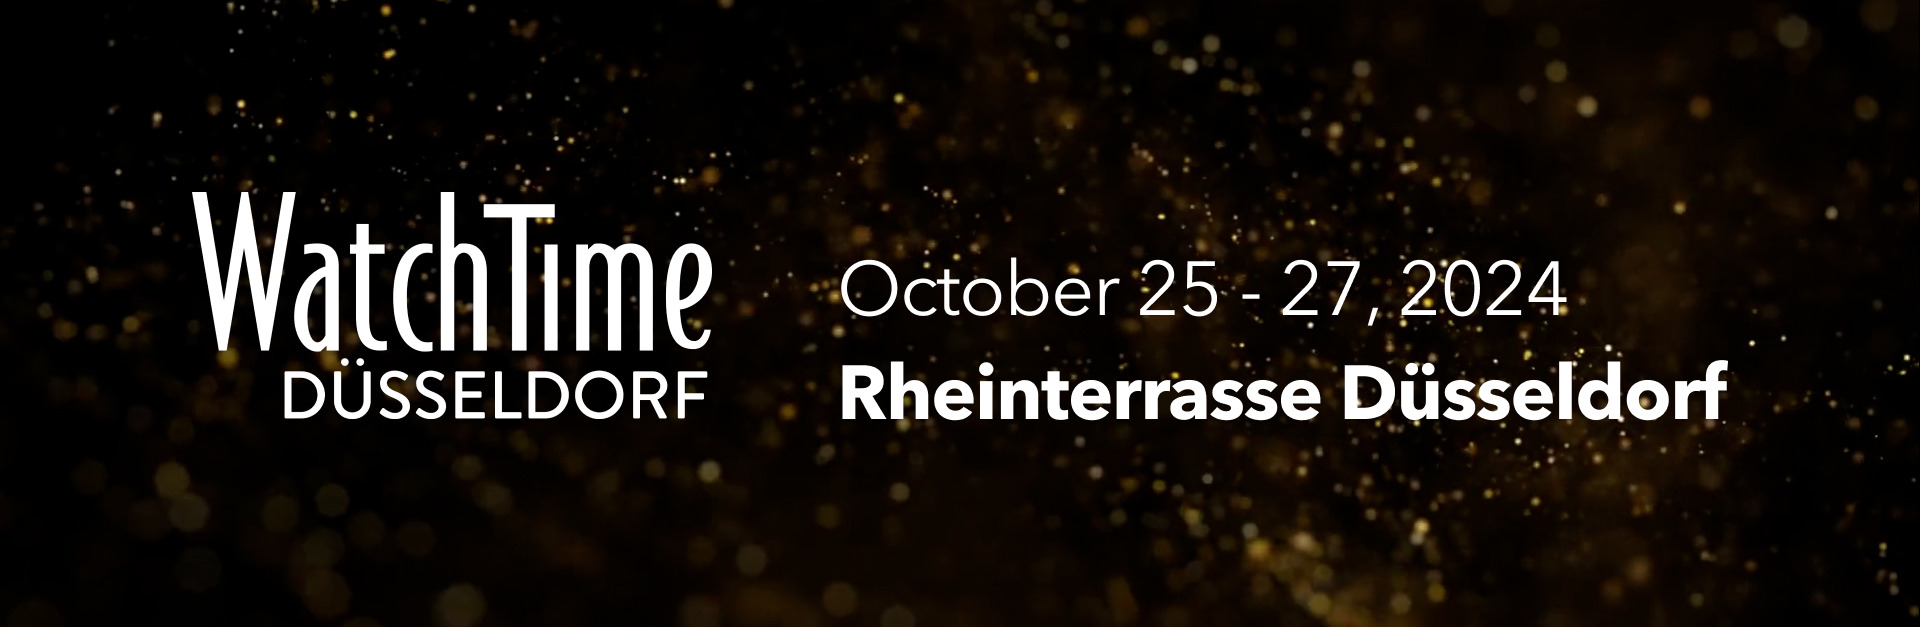 Header with information about the event WatchTime Düsseldorf 25 - 27 October 2024 in the Rheinterrasse Düsseldorf.